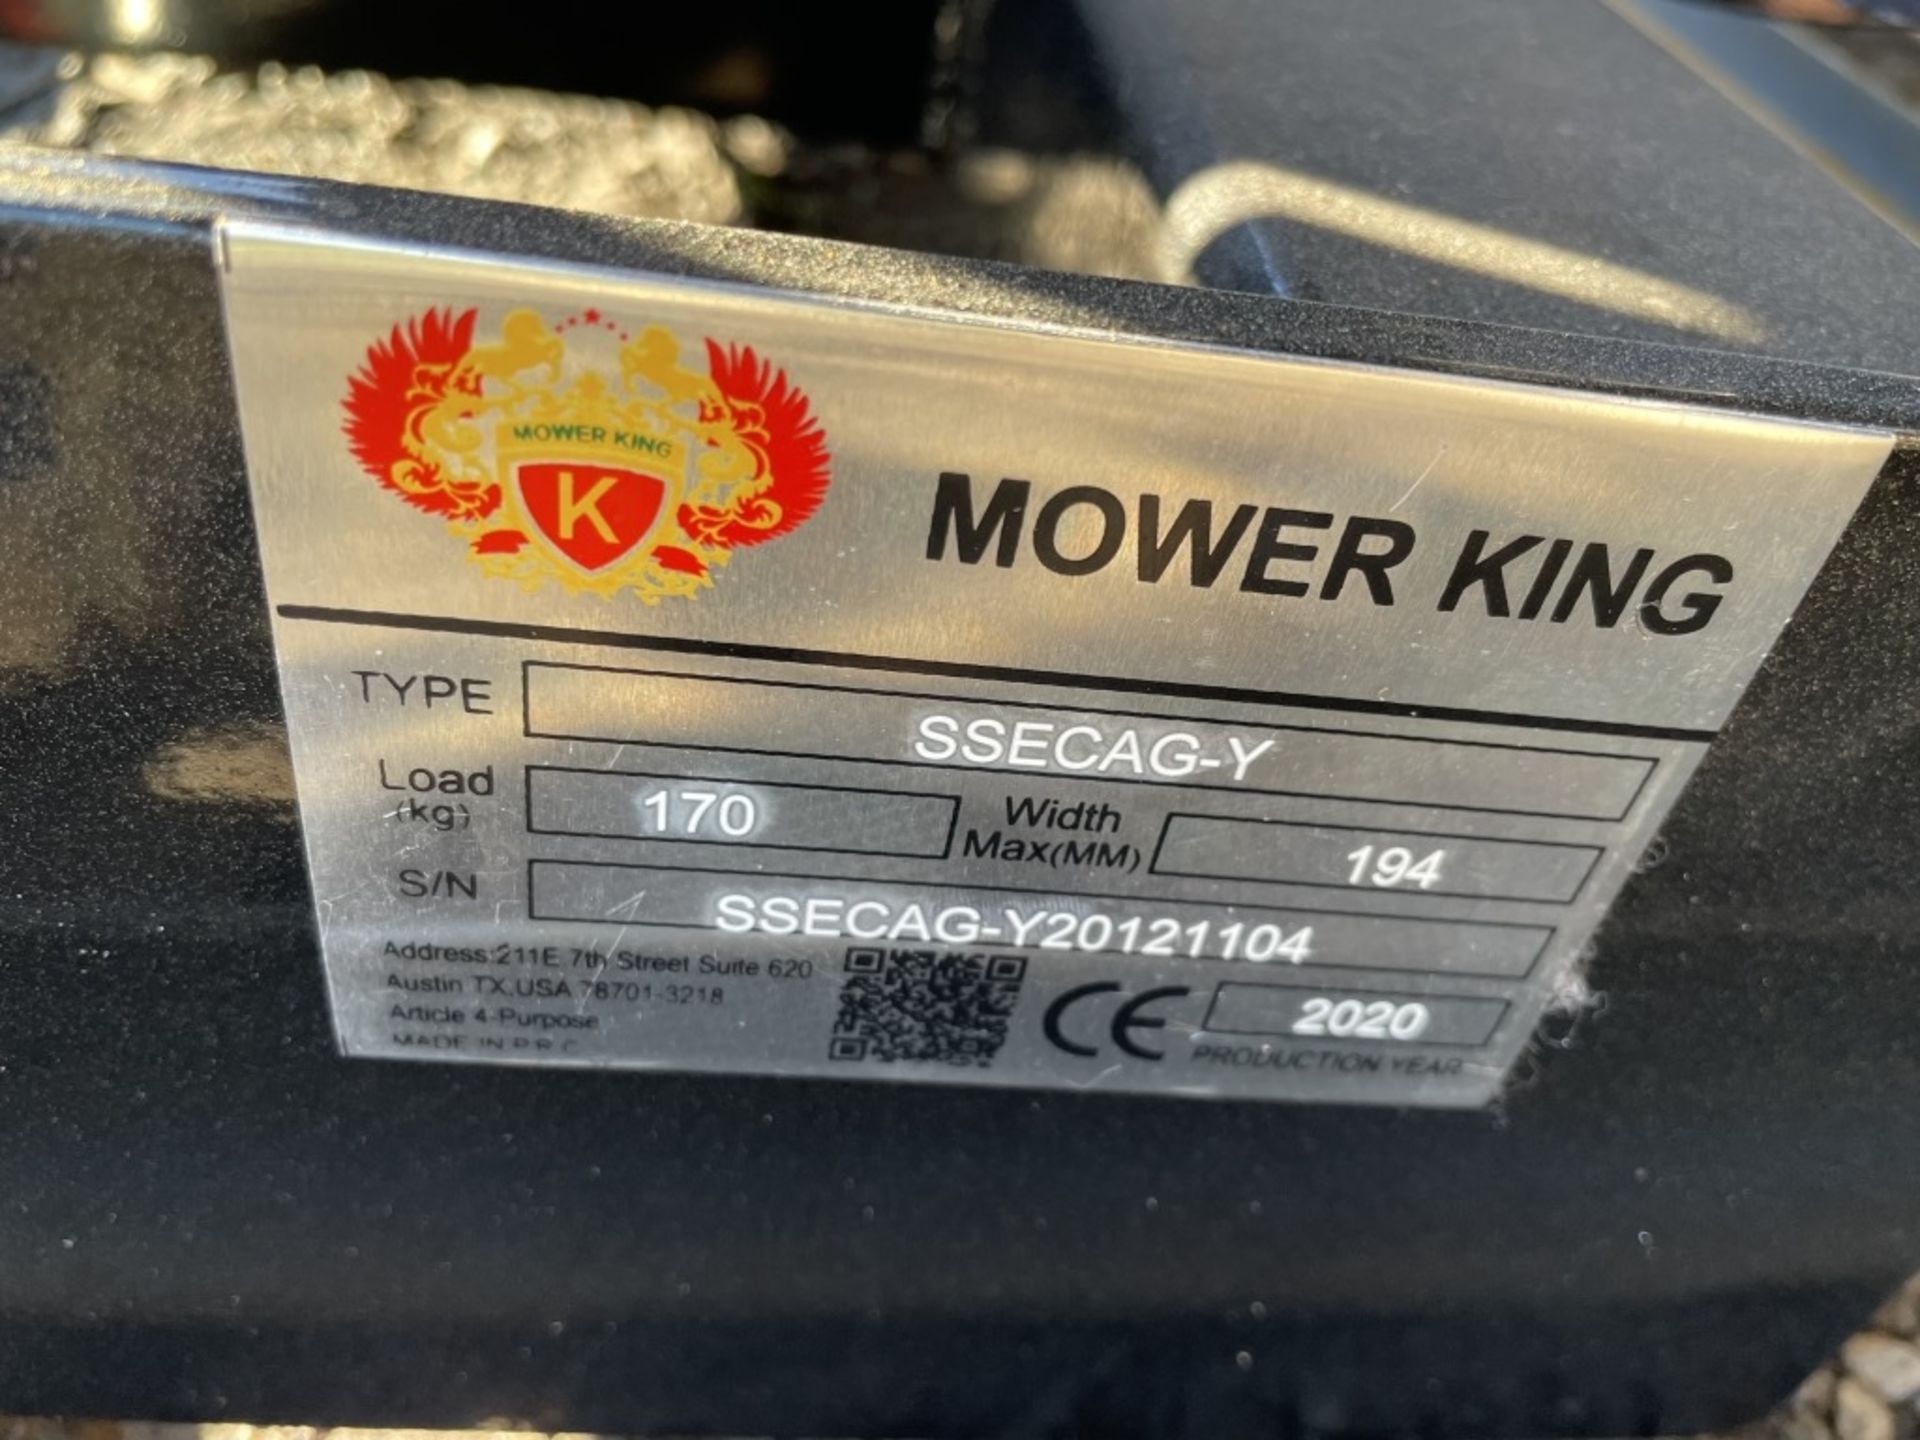 2020 Mower King SSECAG-Y Auger - Image 5 of 5